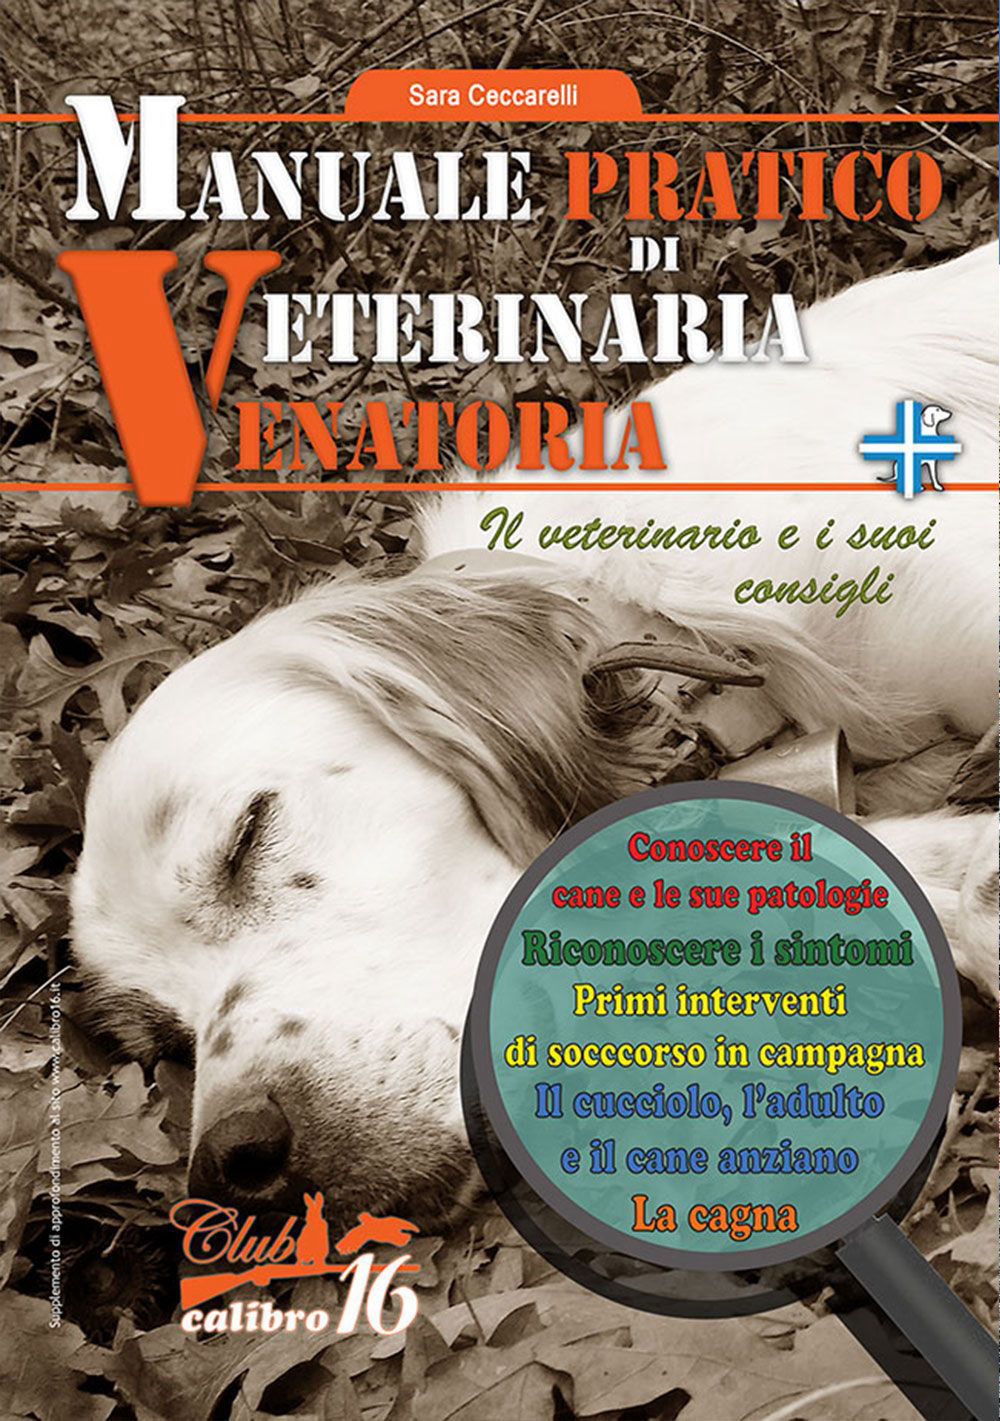 manuale pratico di veterinaria venatoria club calibro 16